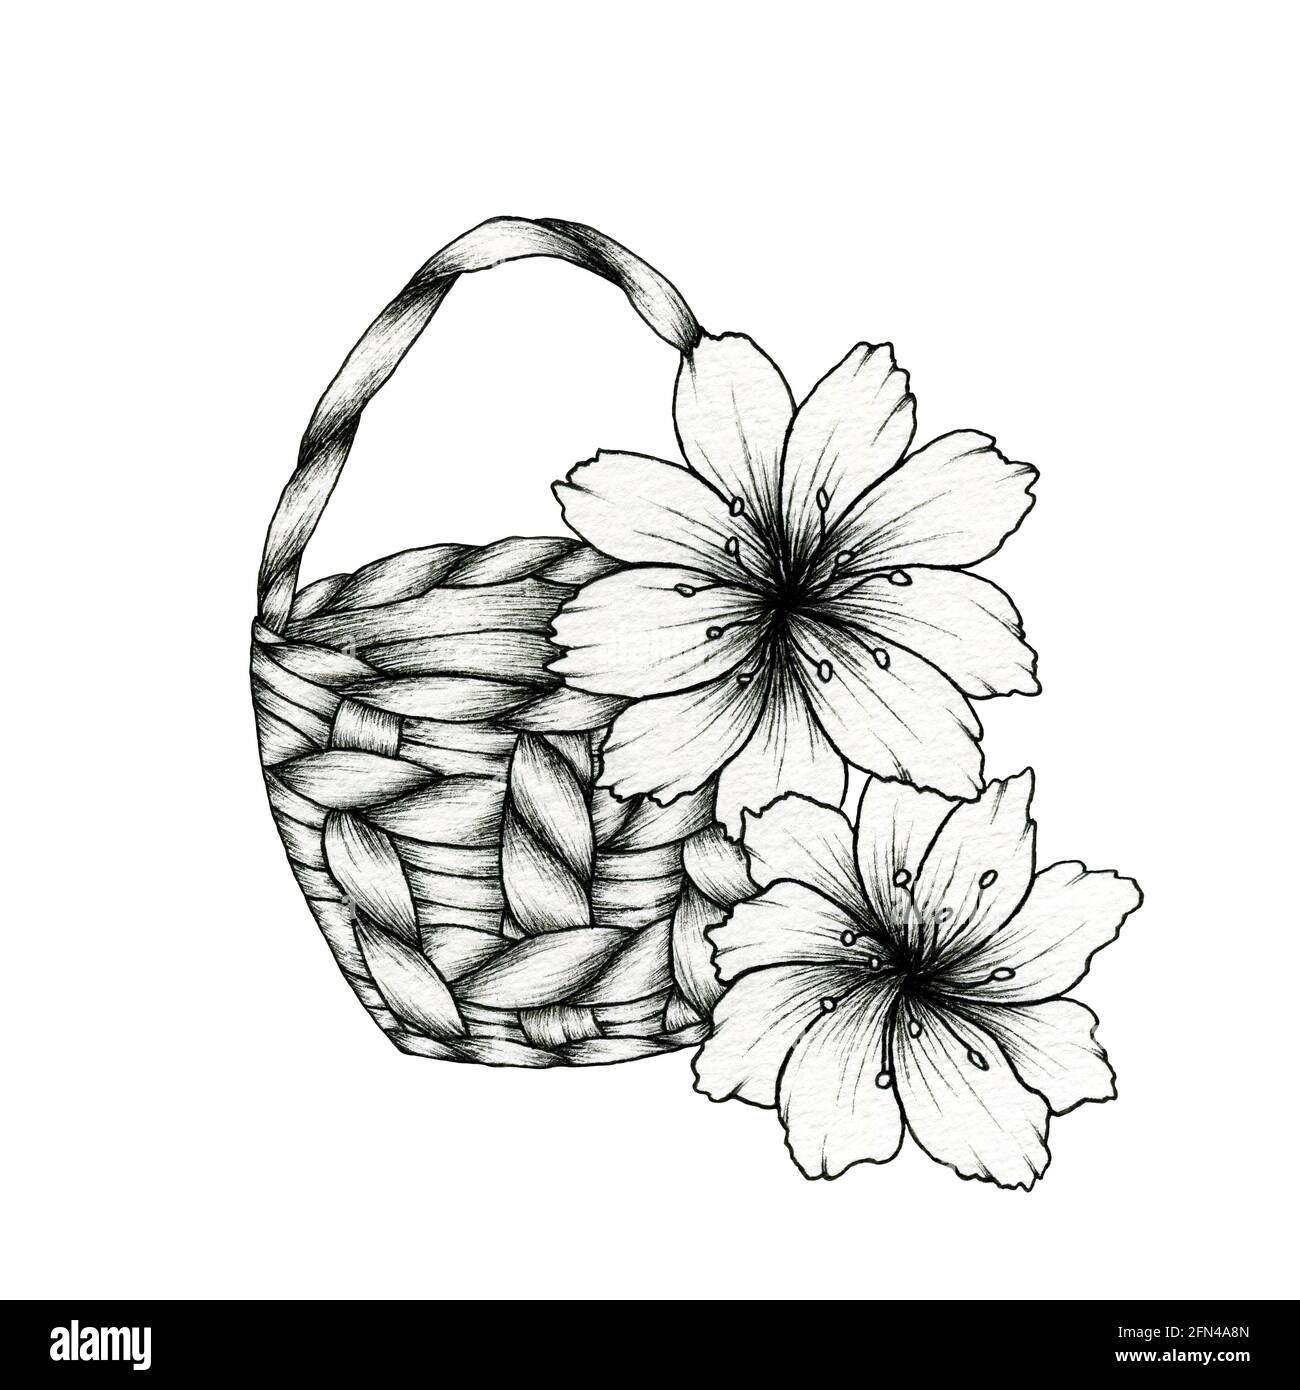 Flower Basket Sketch Images  Free Download on Freepik